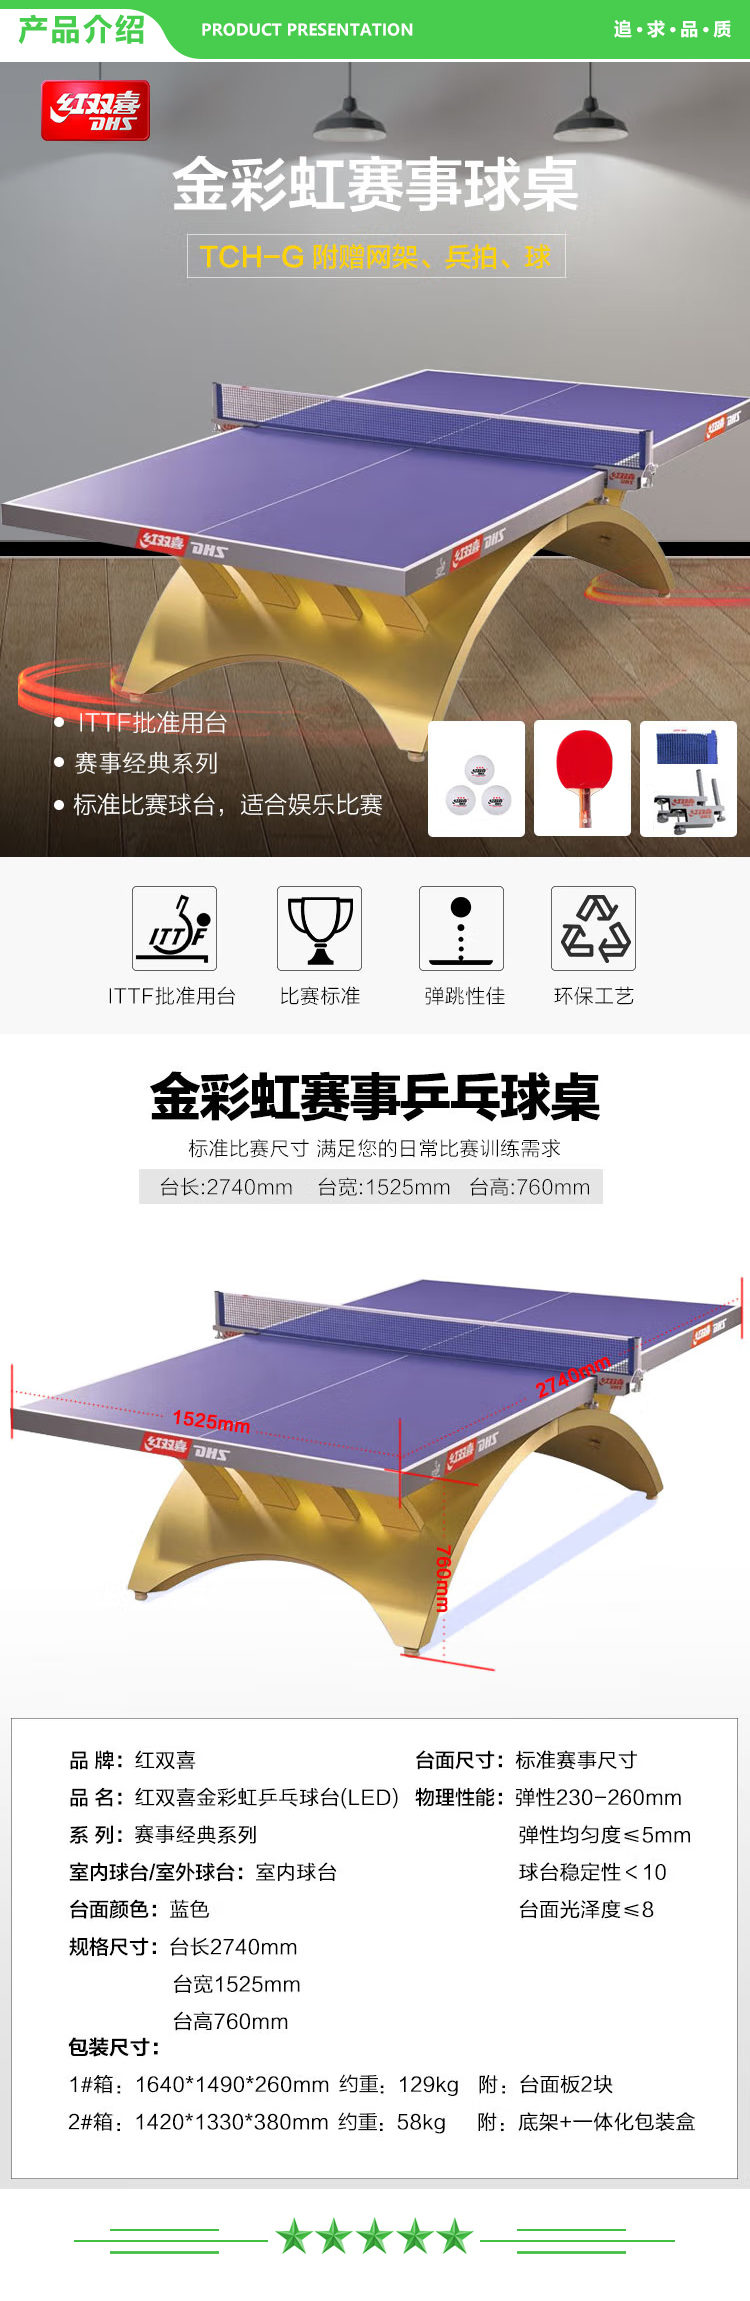 红双喜 DHS TCH-G 乒乓球台 金彩虹大客户专享乒乓球桌 .jpg